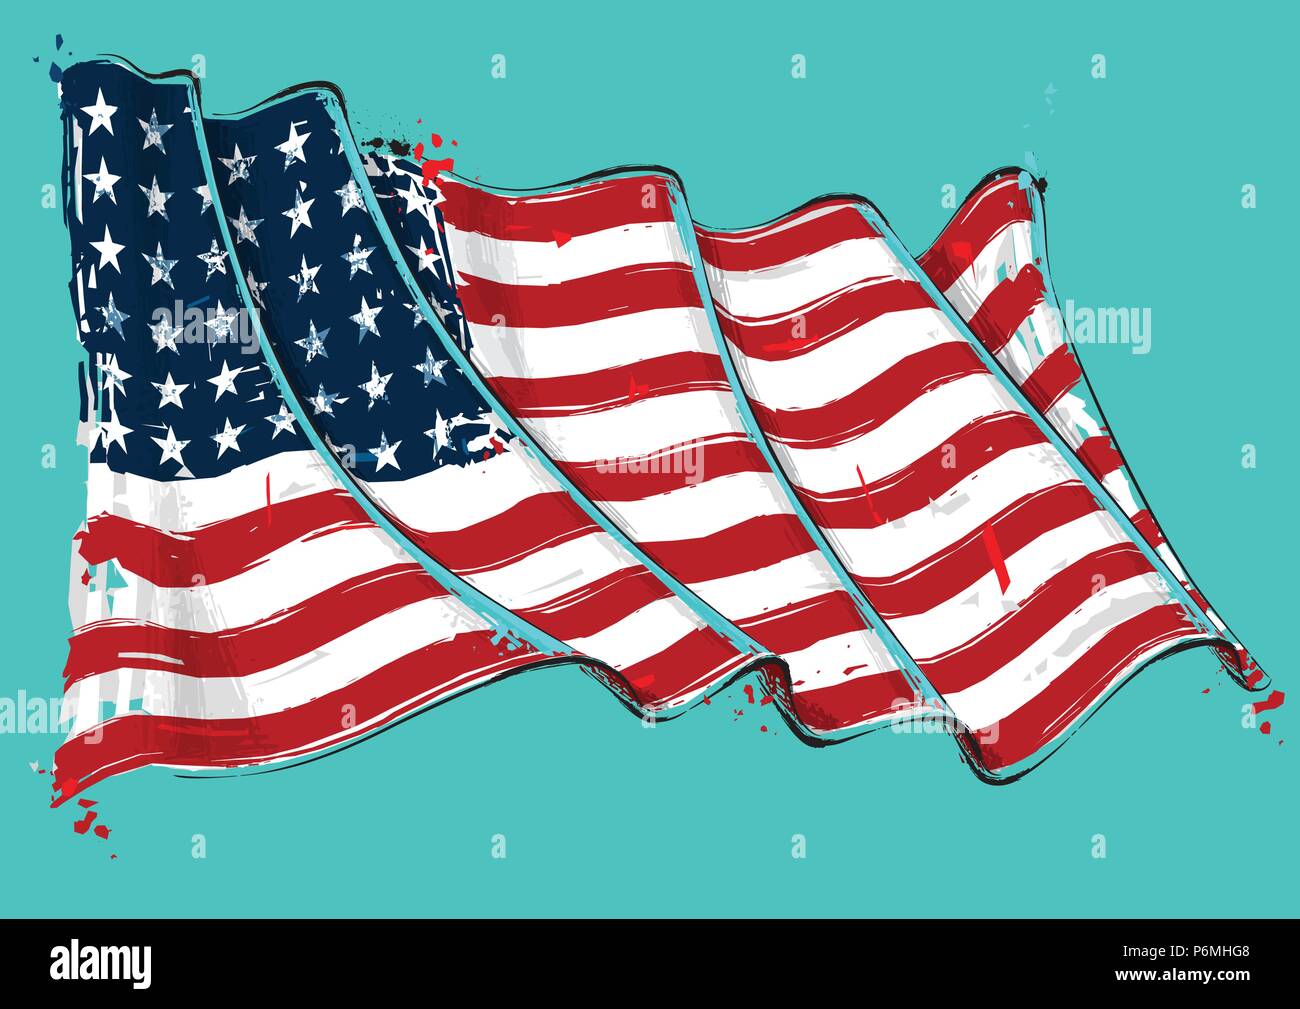 Vektor grange Abbildung eines 48 Sterne American wehende Flagge. Dies war der USA-Flagge während des ersten Weltkrieges, dem zweiten Weltkrieg und im Koreakrieg. Alle Elemente ordentlich auf d Stock Vektor